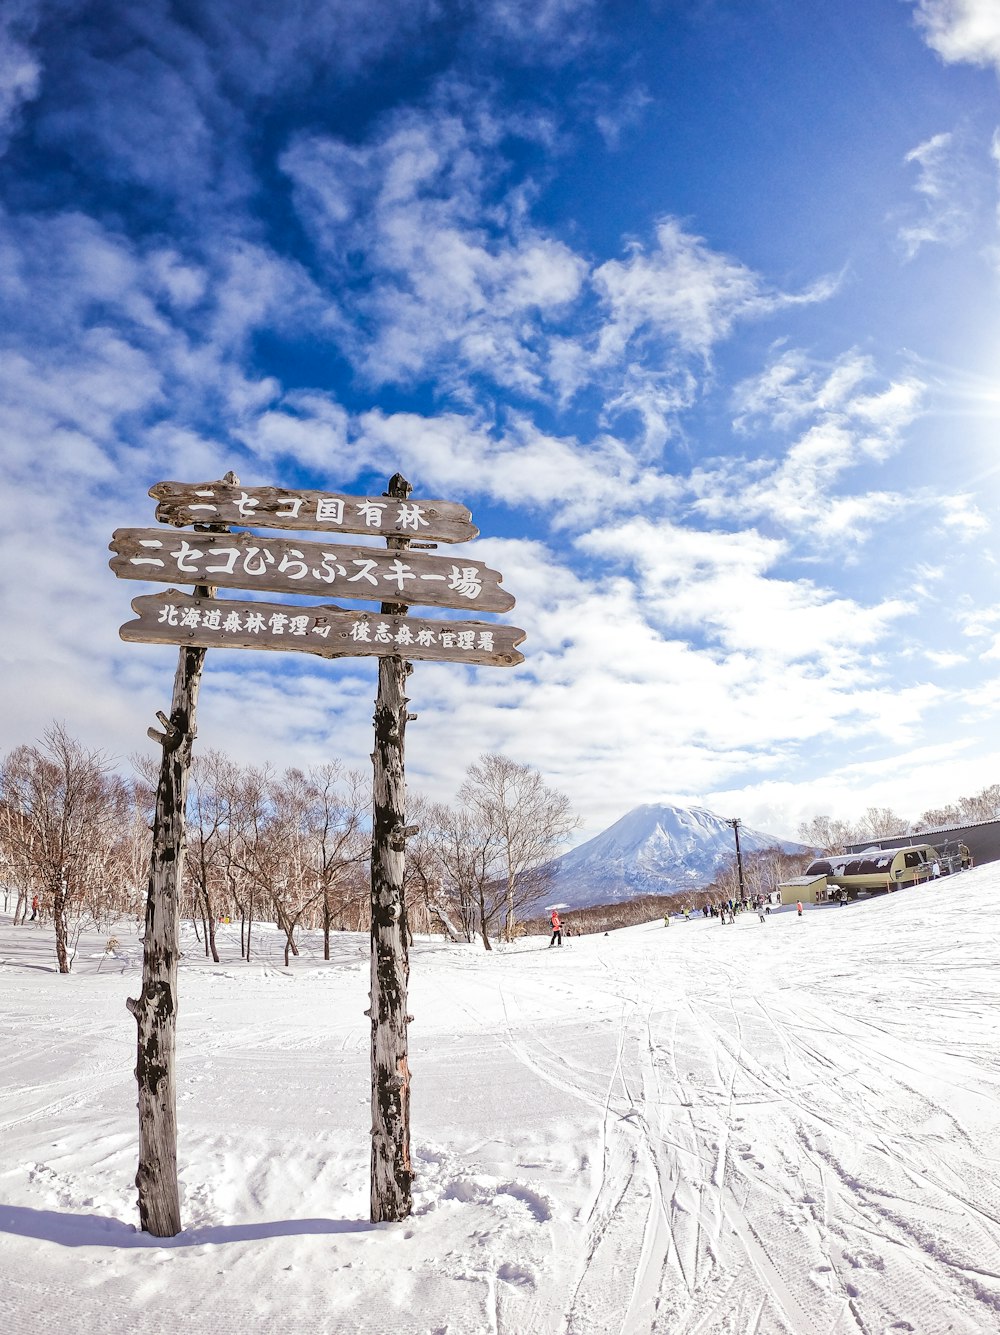 panchina di legno marrone su terreno coperto di neve sotto cielo nuvoloso blu e bianco durante il giorno